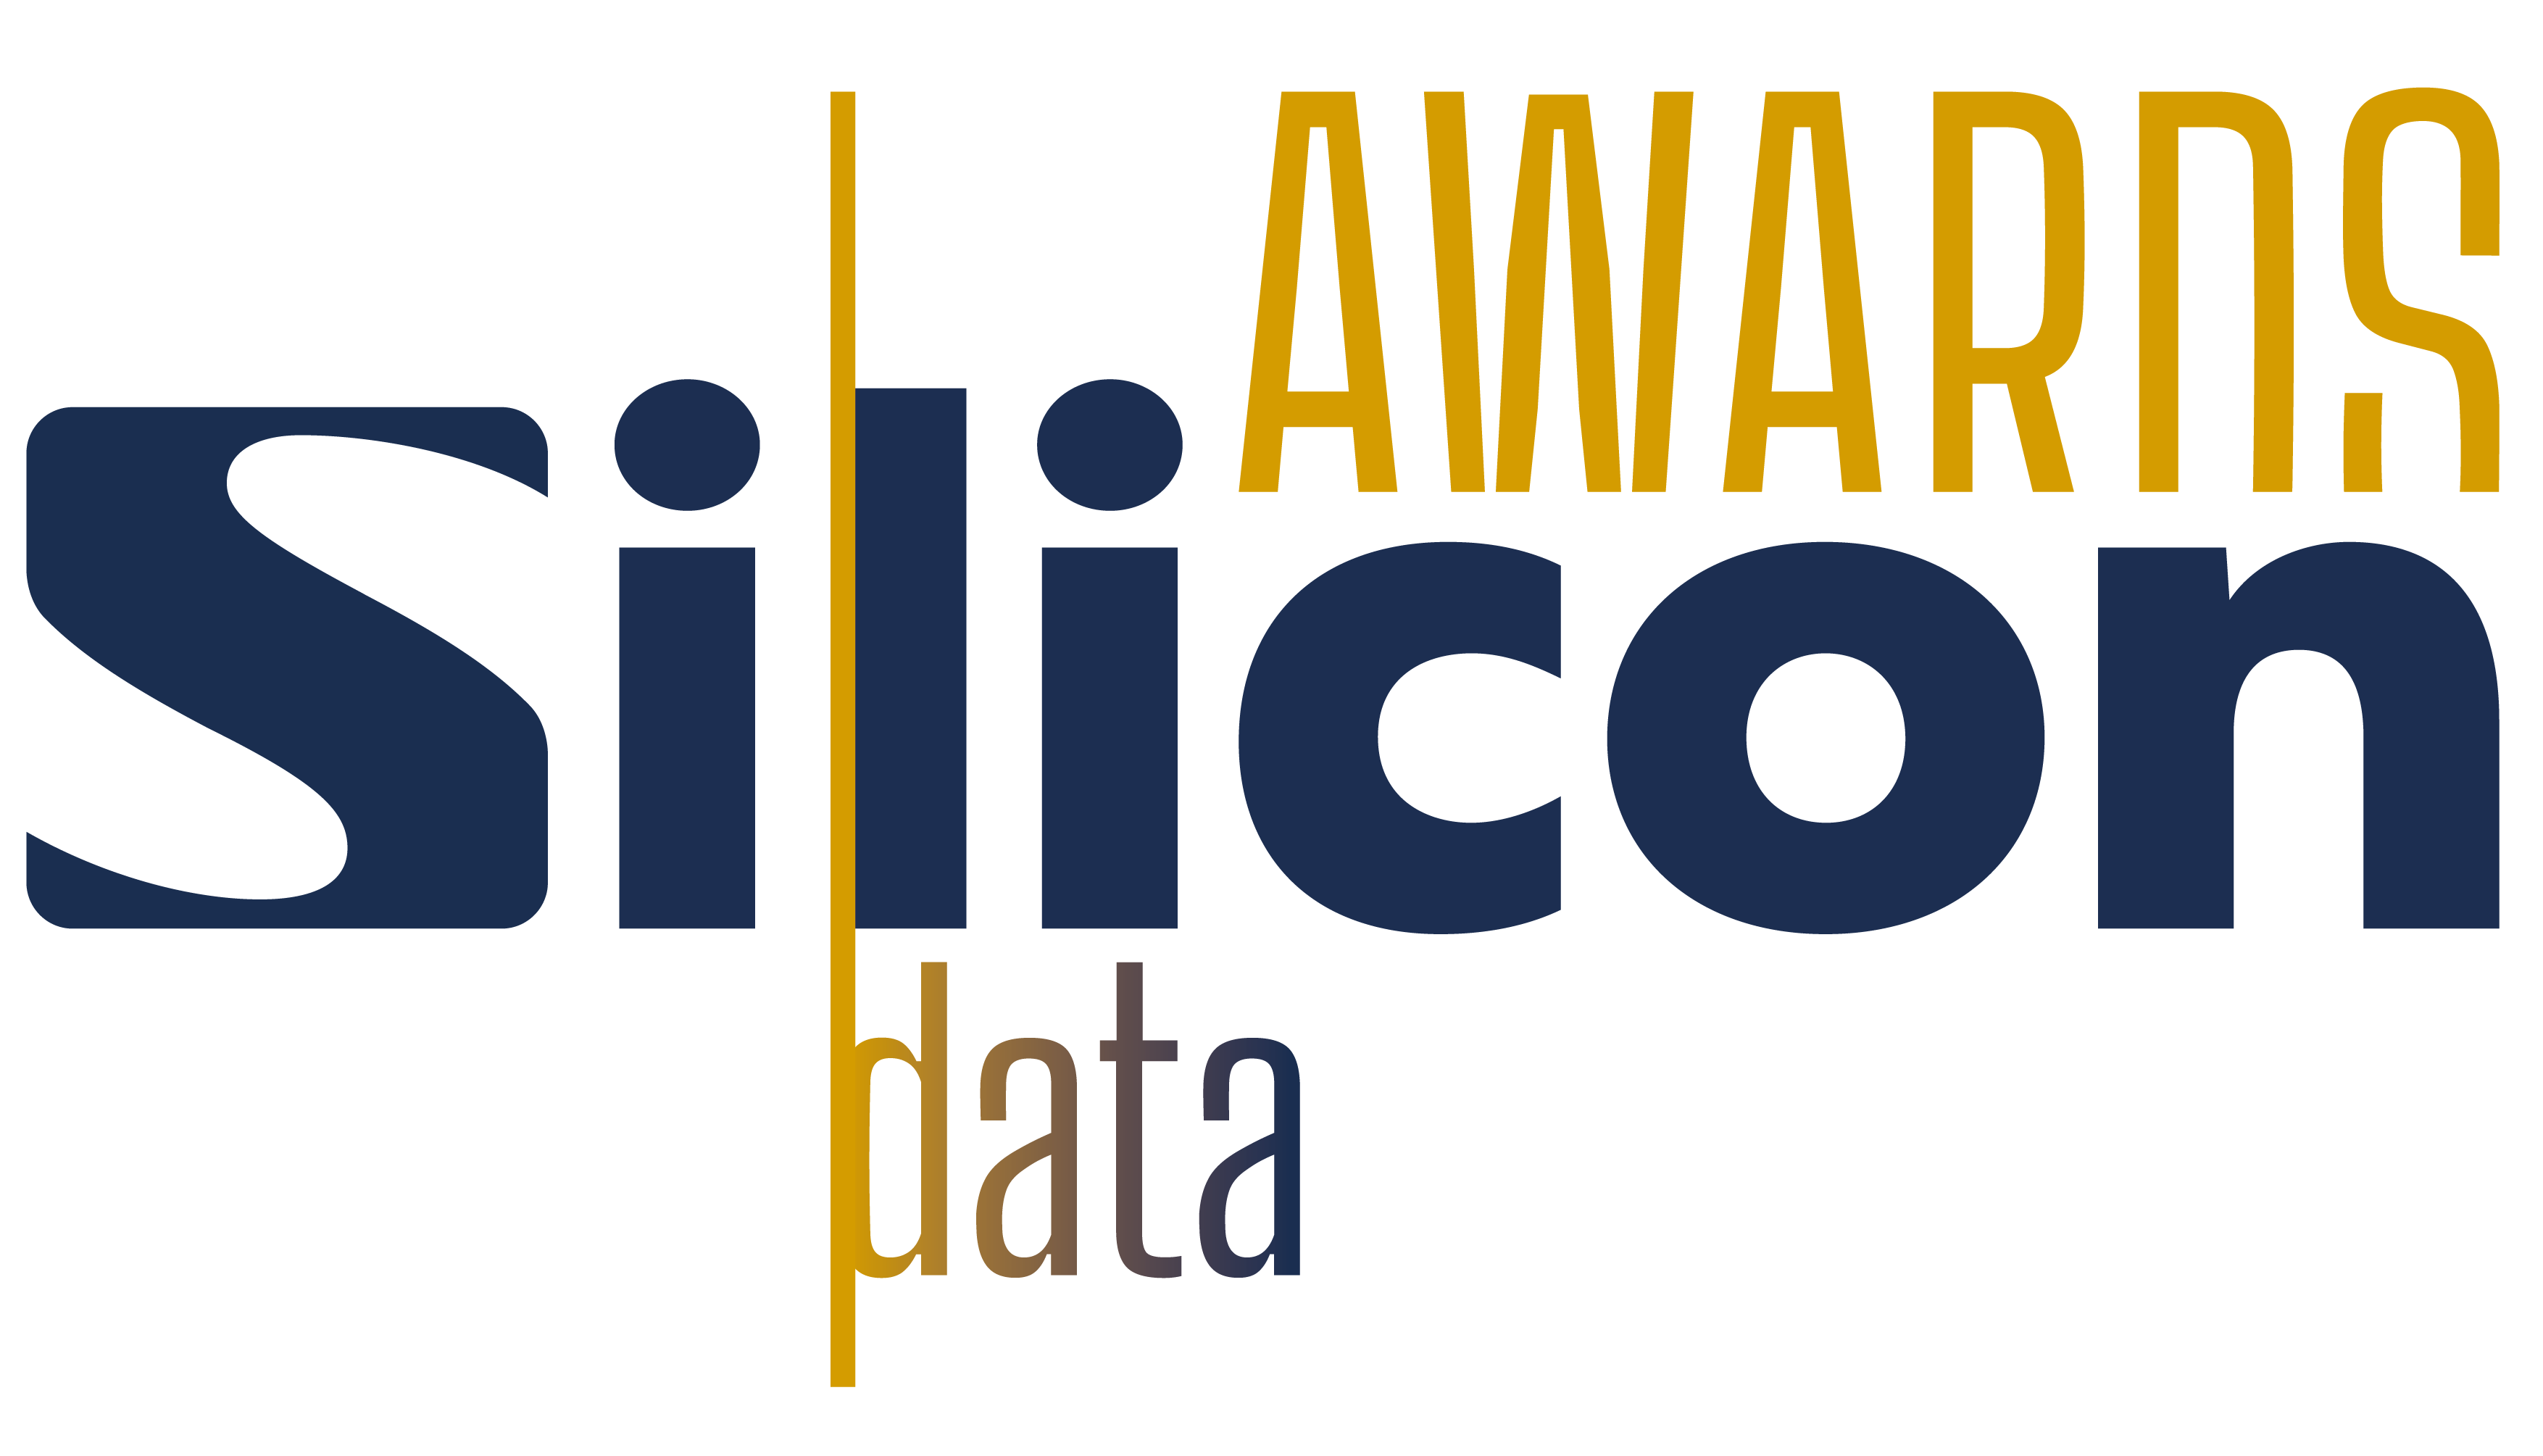 SDA22 - Silicon Data Awards 2022